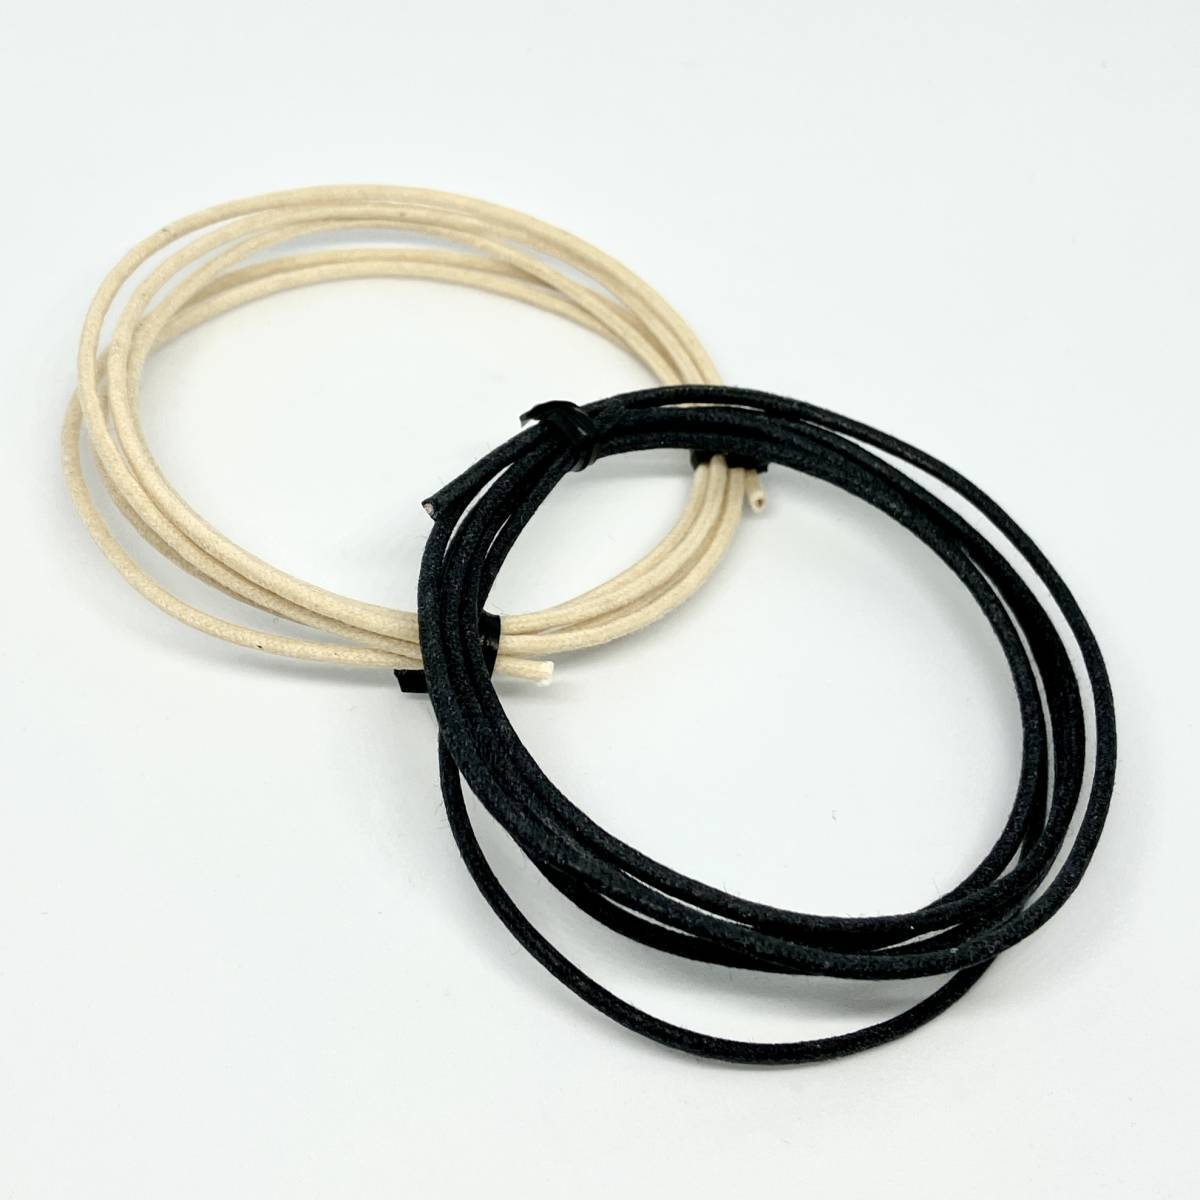 USA Cloth Wire 配線材 ワイヤー １m 白 黒 セット Fender タイプ No.2の画像1